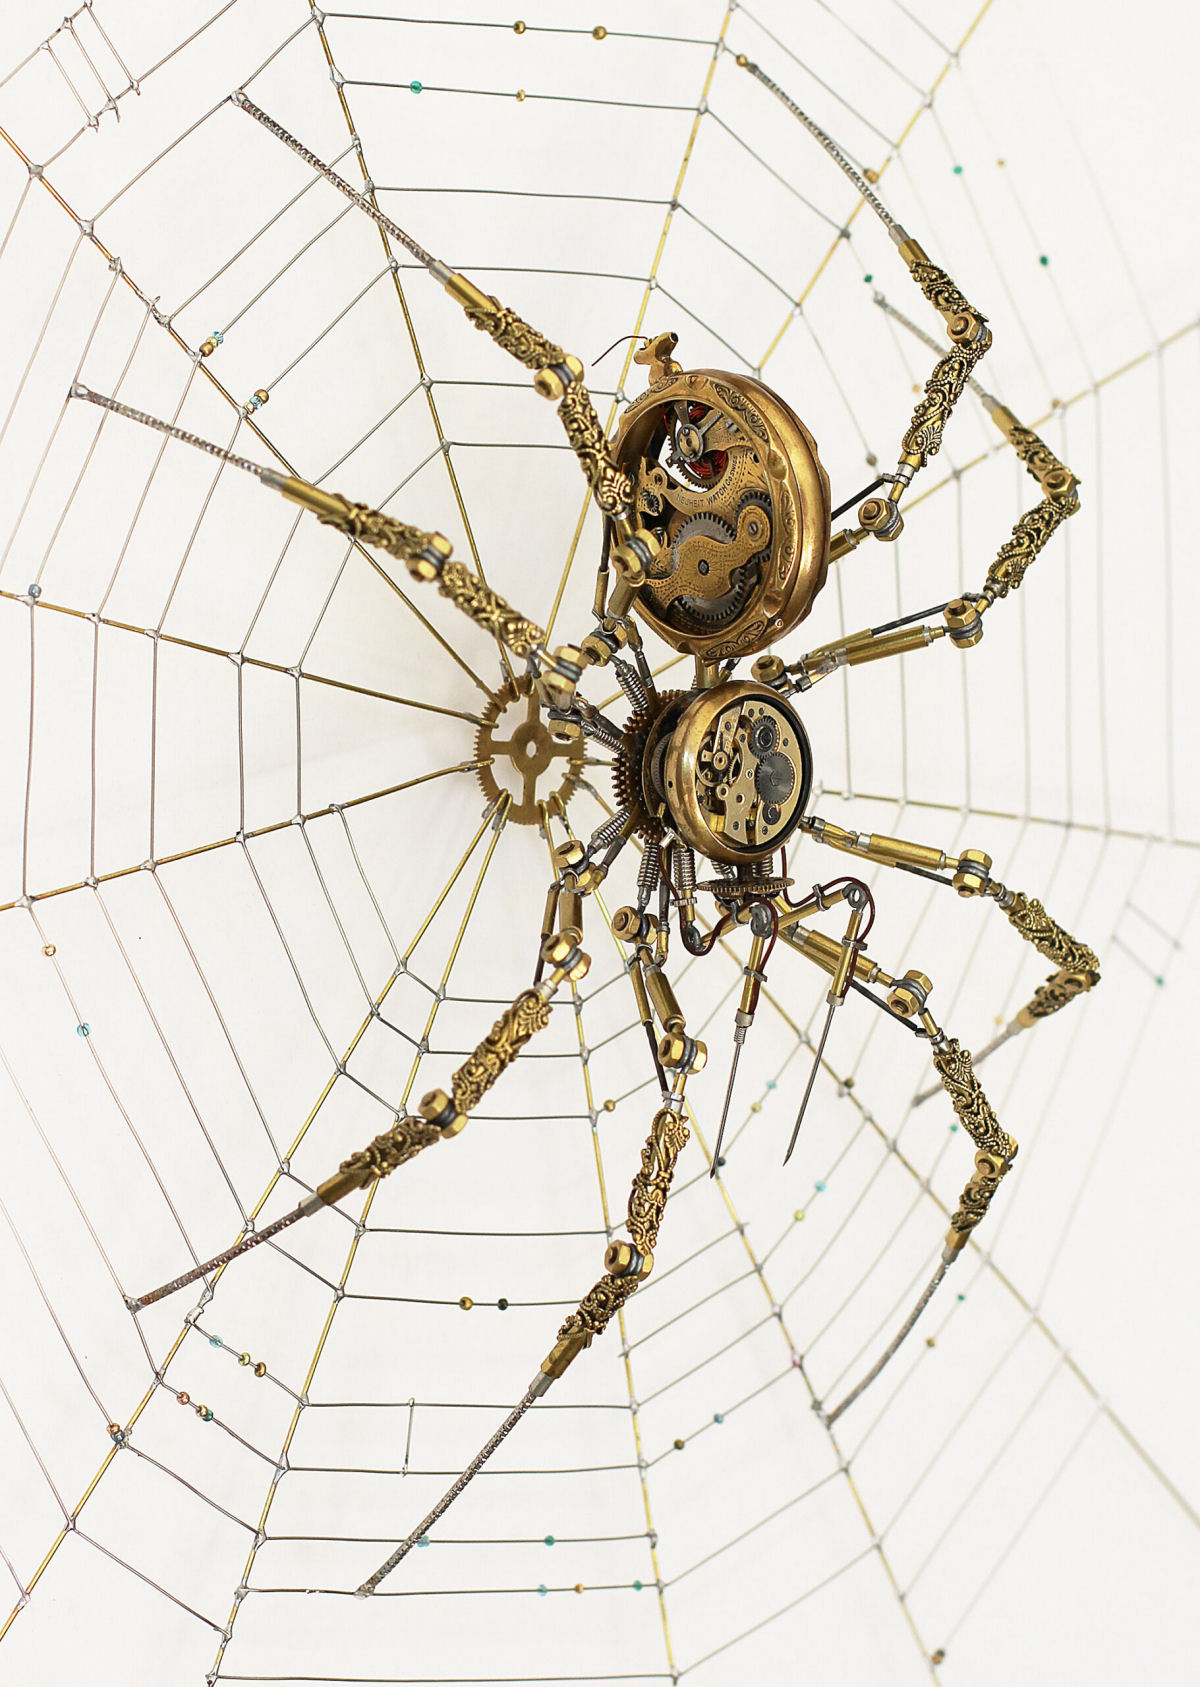 Artista húngaro cria meticulosas aranhas Steampunk com peças de relógios, câmeras e equipamentos médicos antigos 02